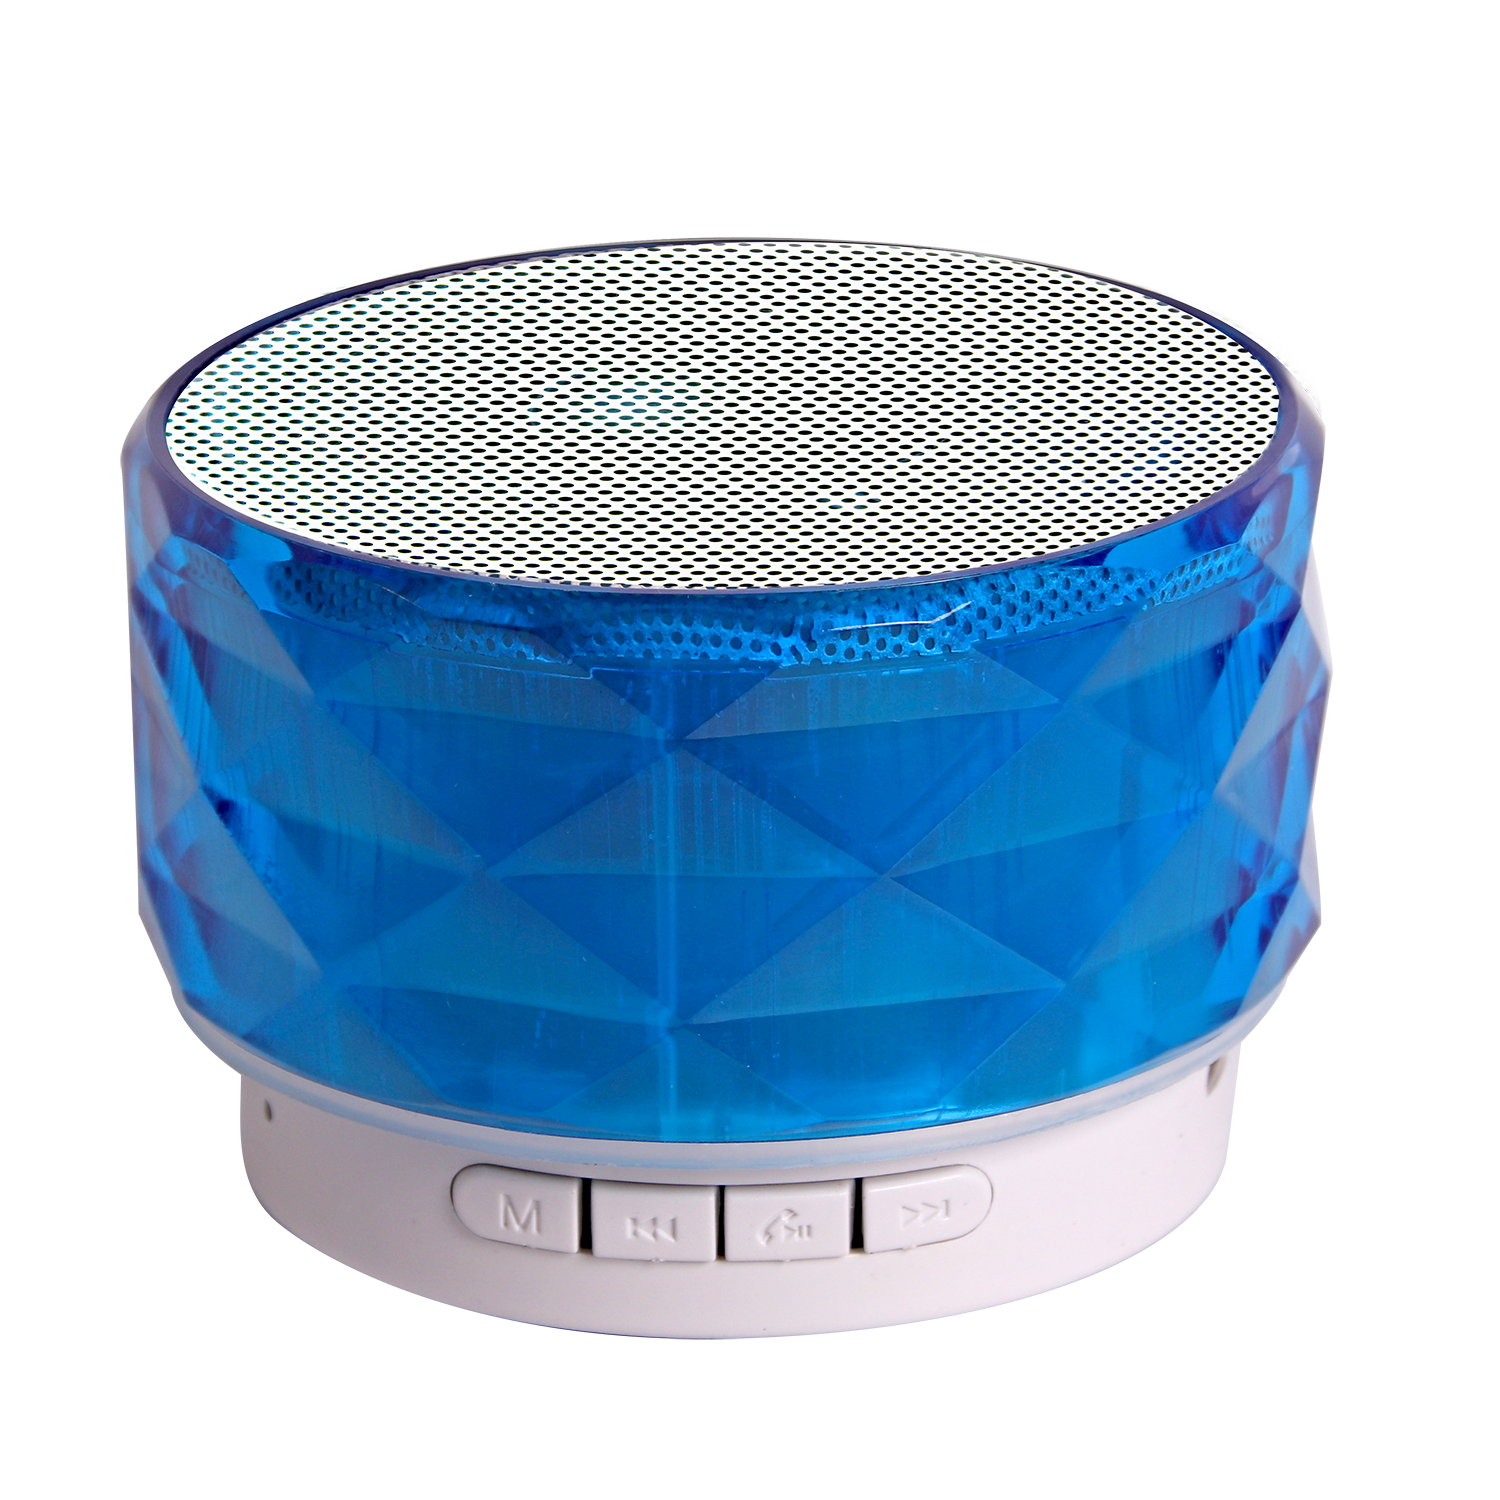 TechXtras Crystal Wireless Speaker - Blue